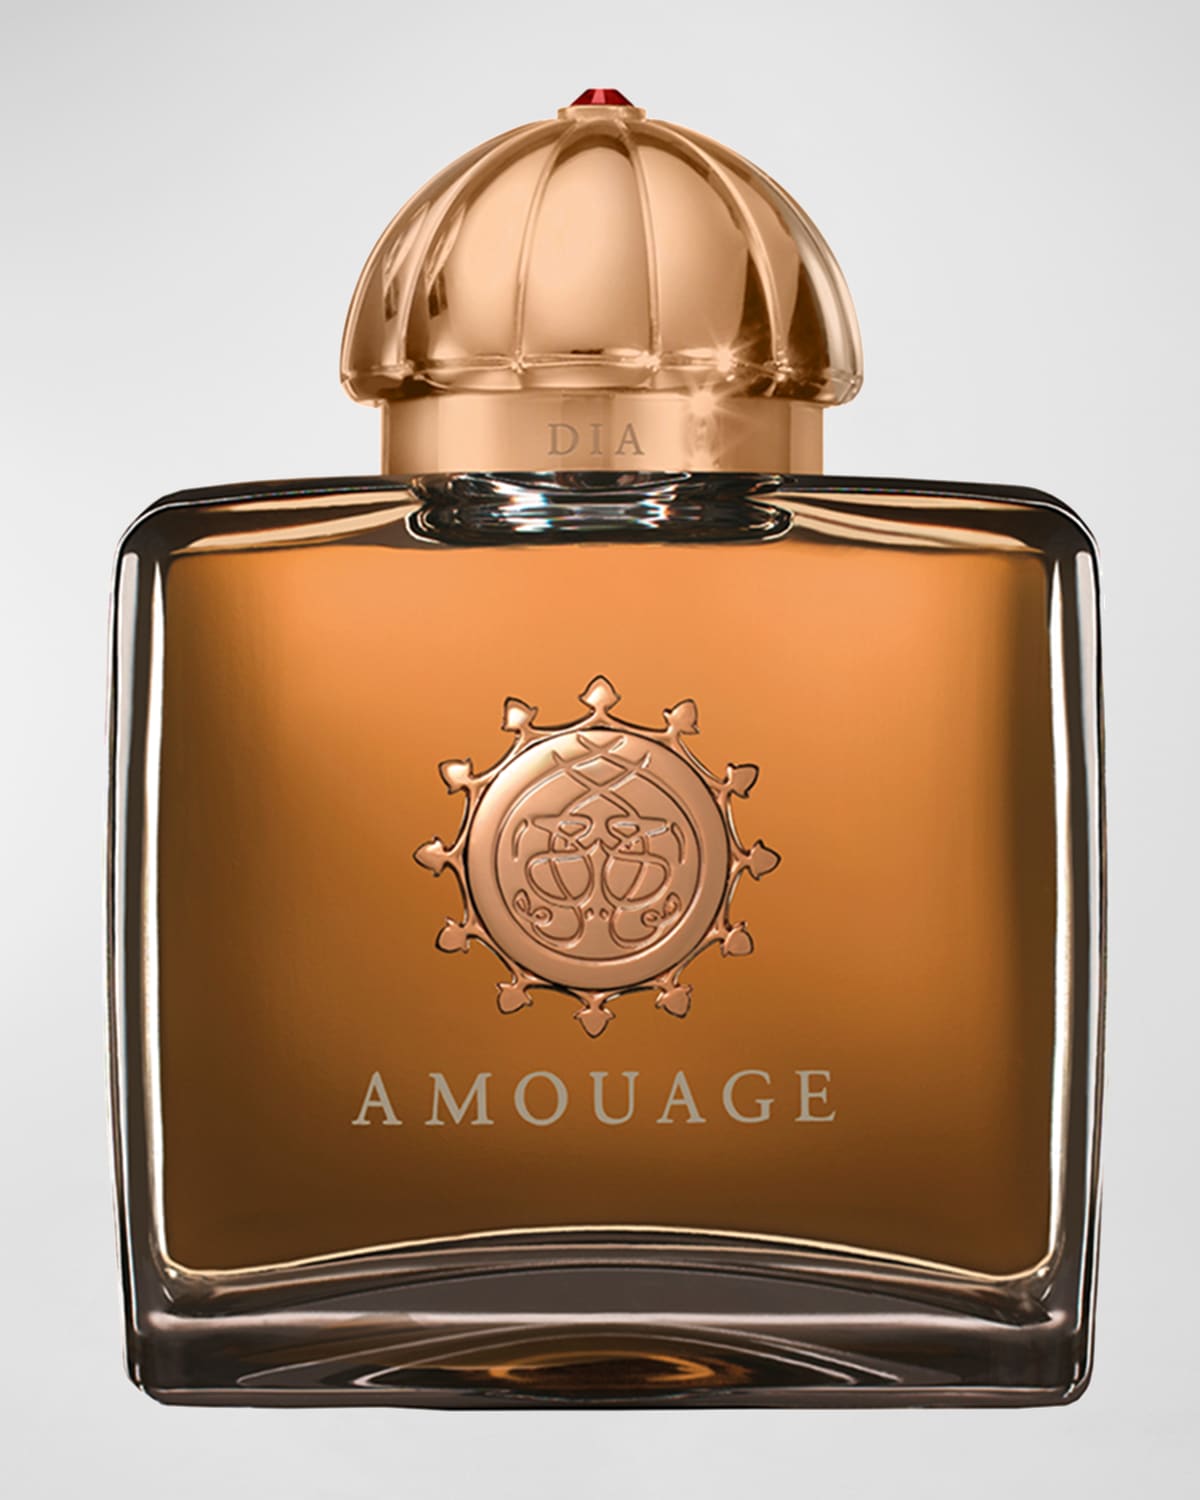 Amouage Dia Woman Eau de Parfum, 3.3 oz.